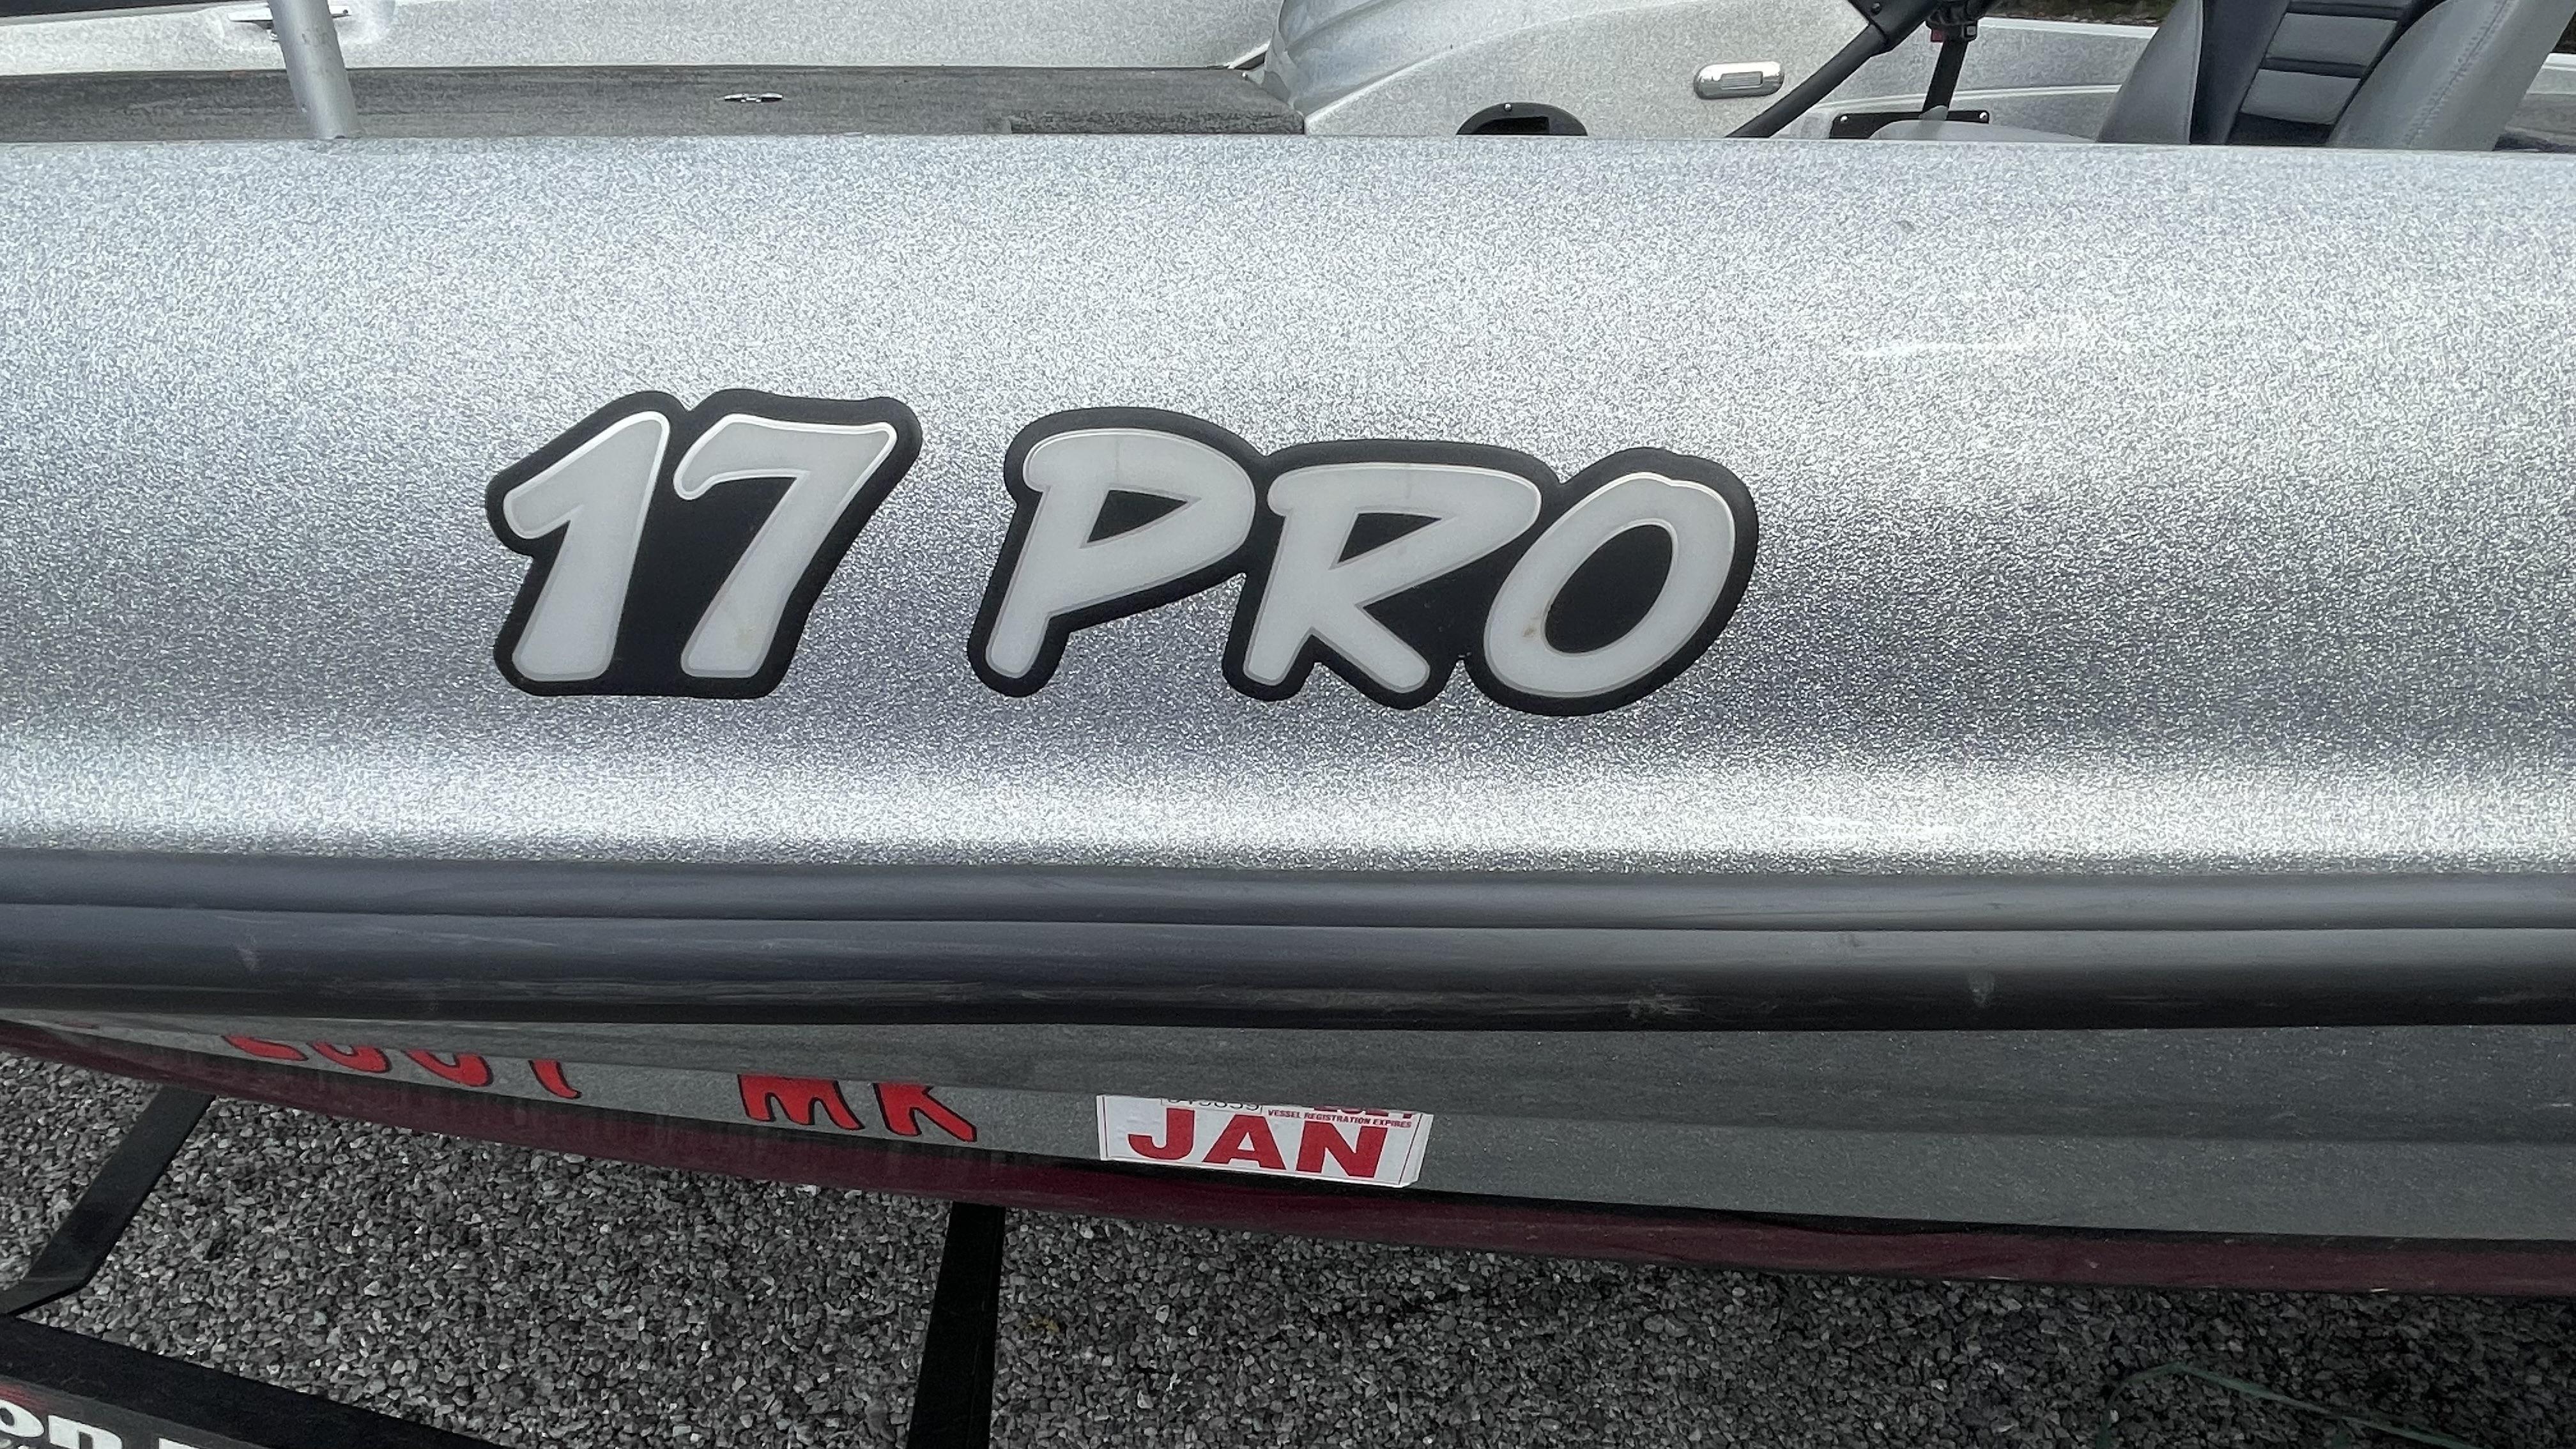 2013 Triton 17 Pro